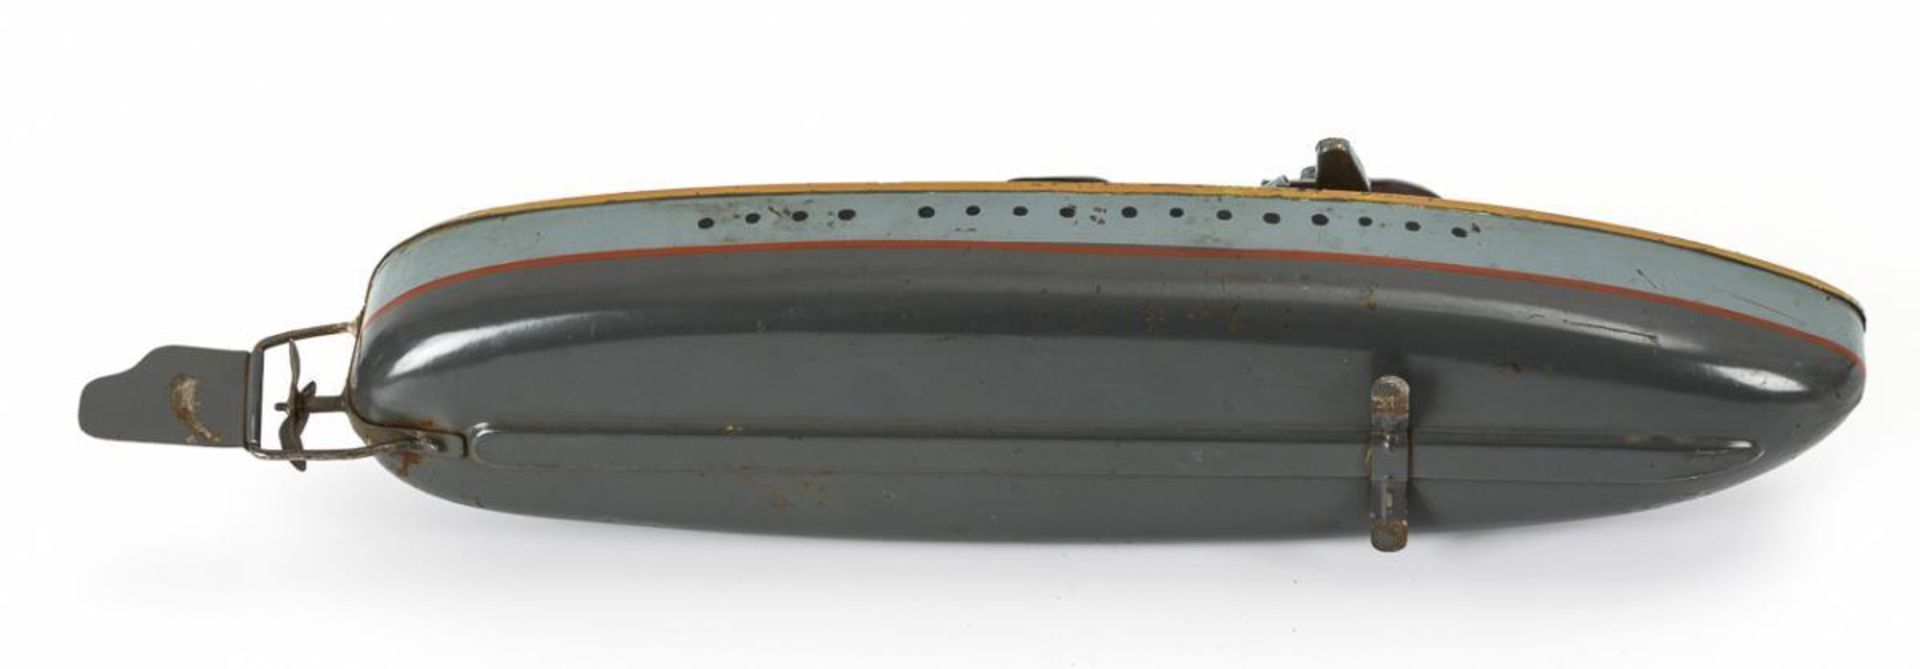 Militärboot - Image 3 of 3